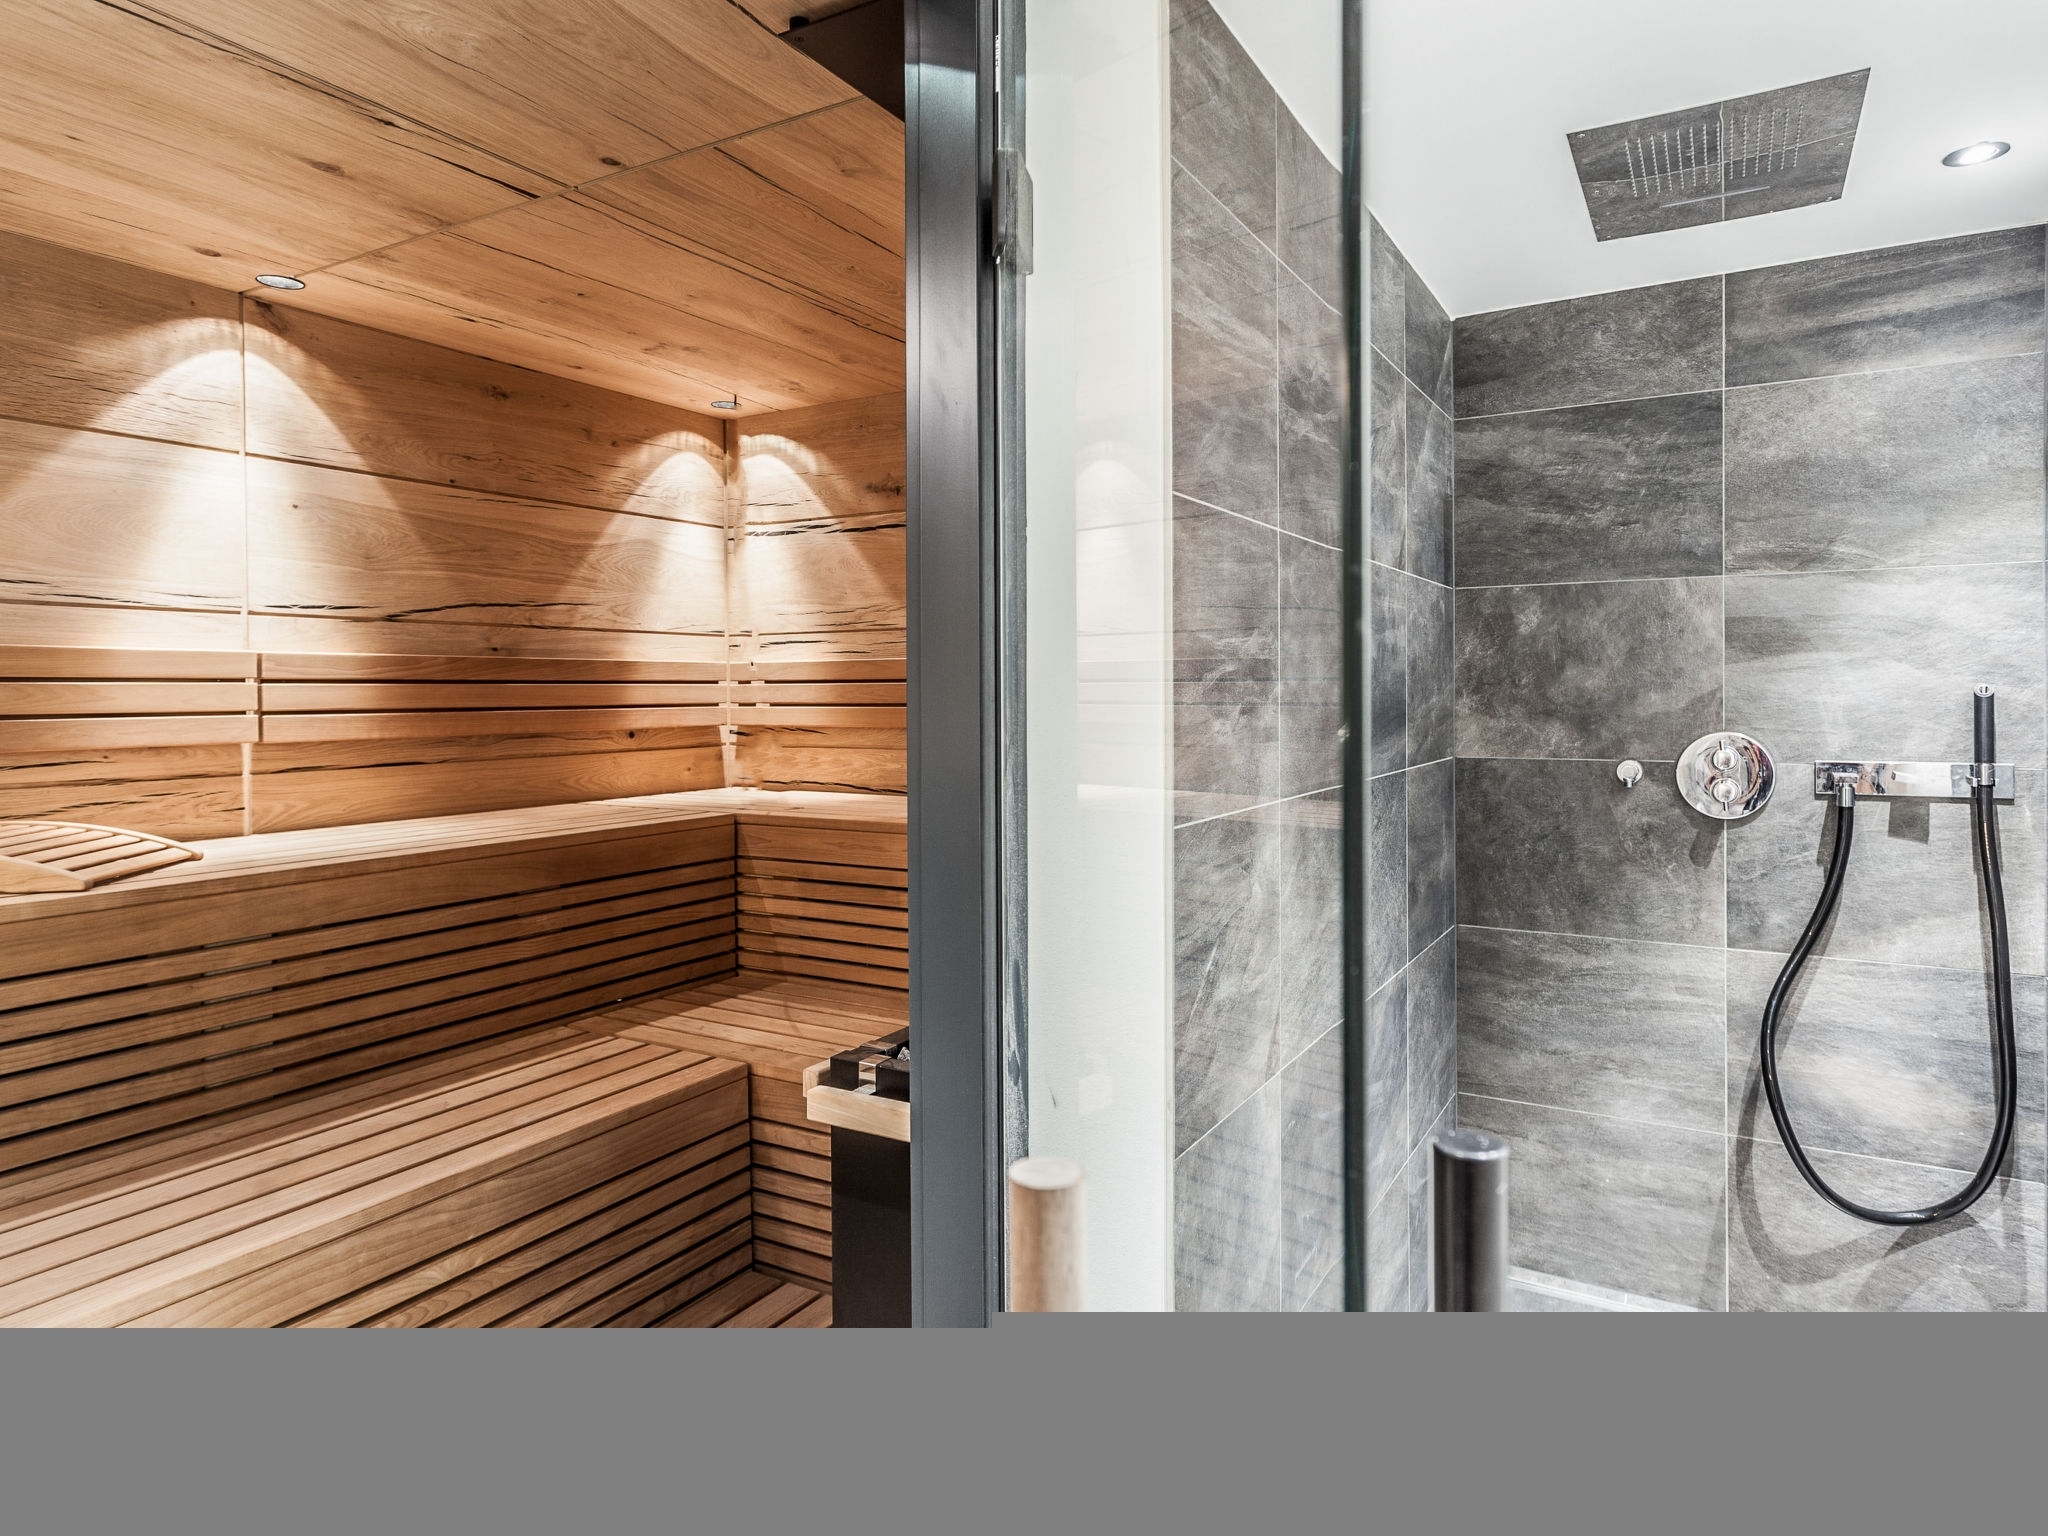 Luxus-Chalet im Montafon: Wellnessbereich mit Sauna (Beispiel)